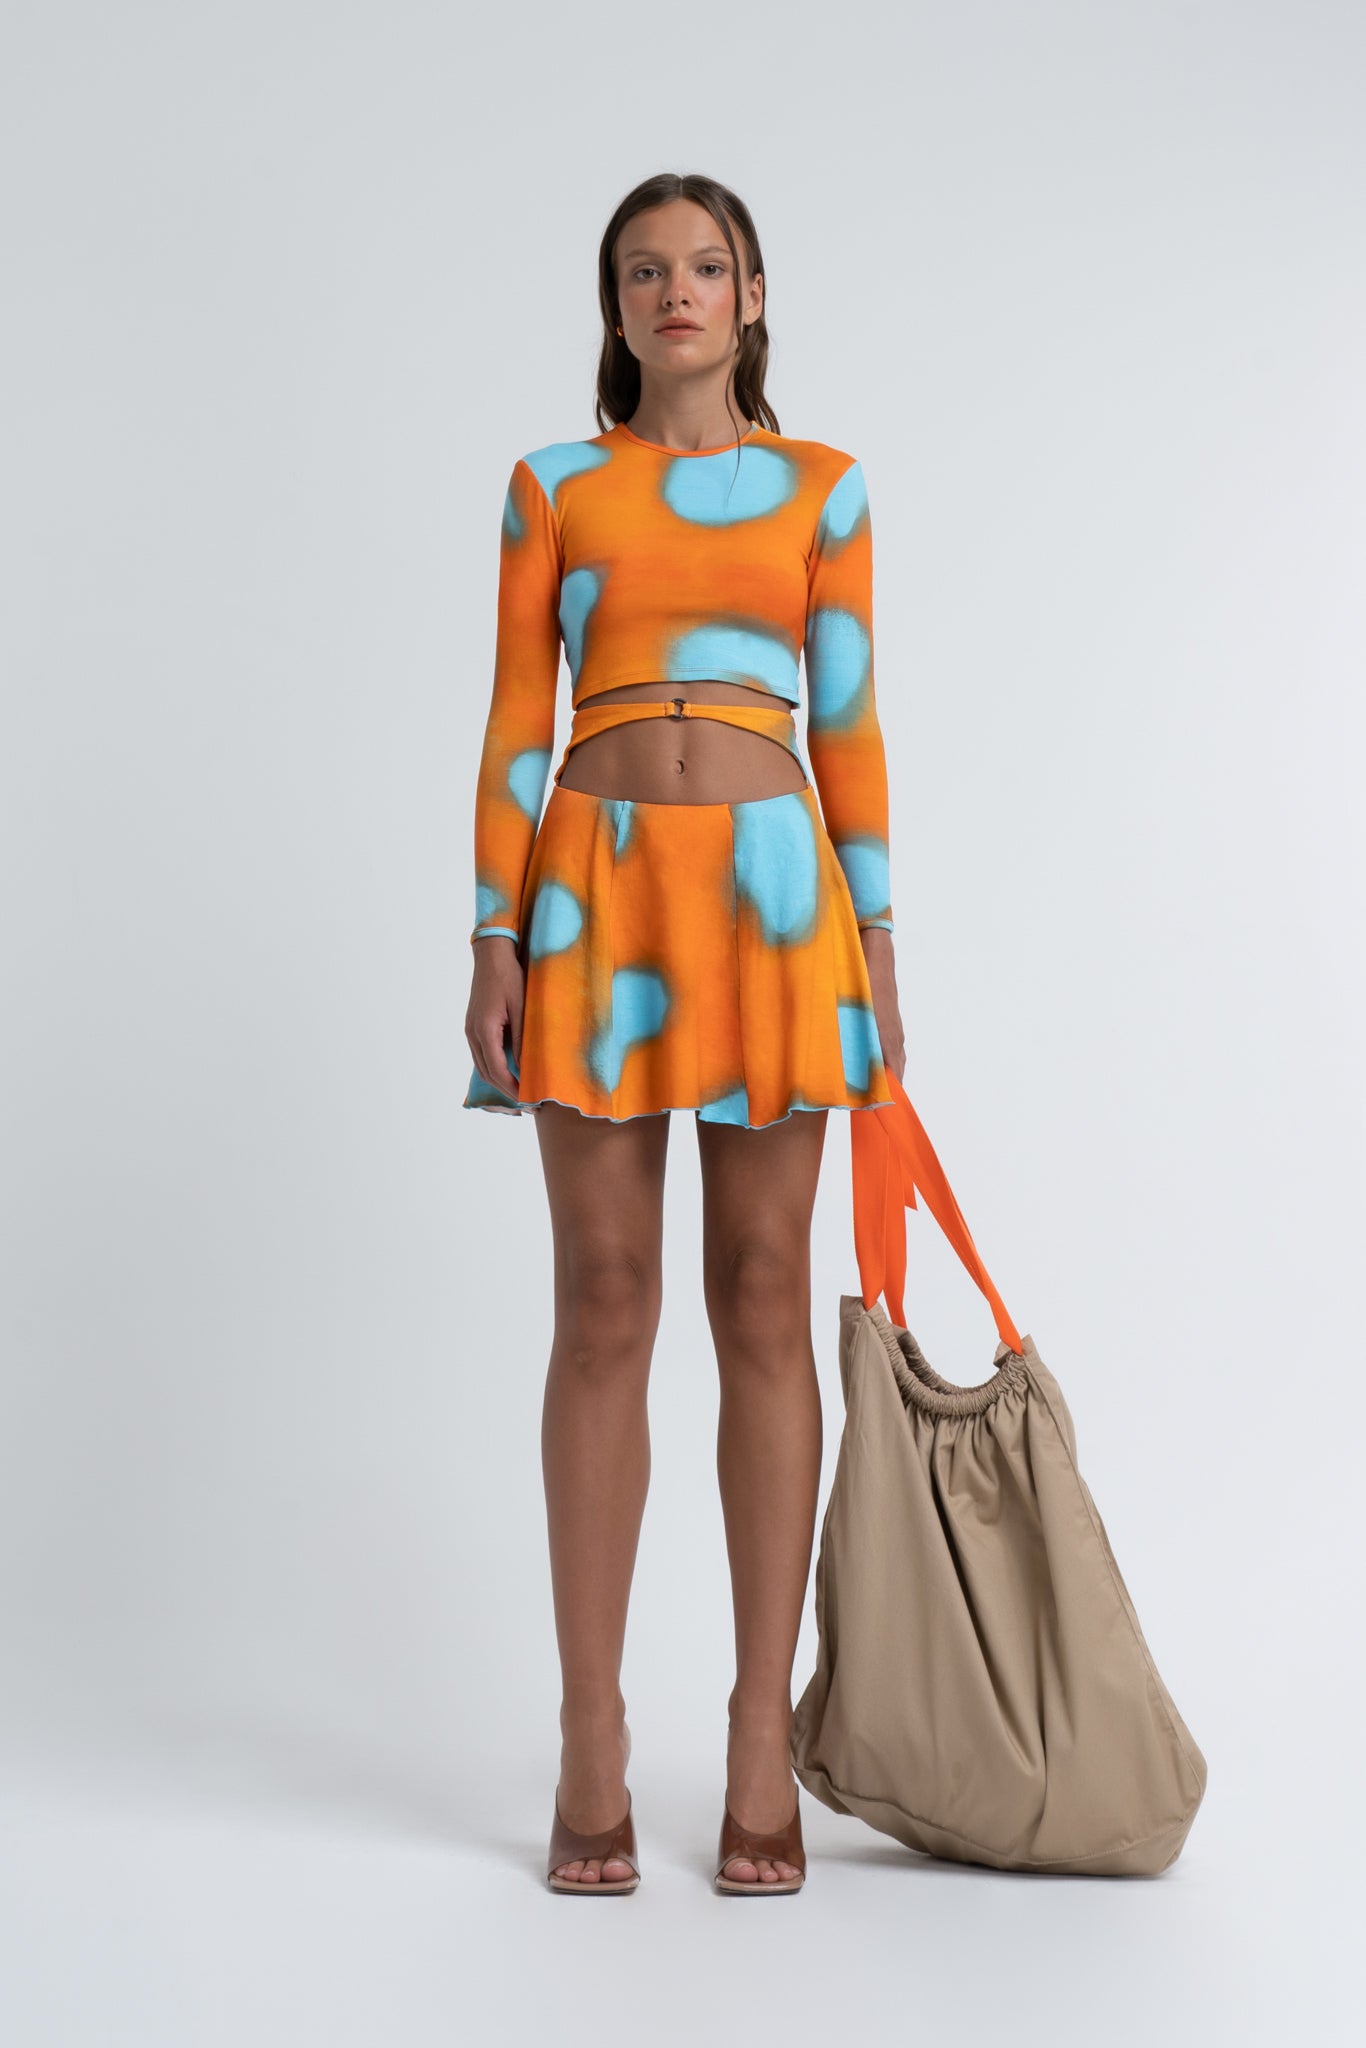 Arthur Apparel Orange Blue Prints Flare Mini Cotton Skirt